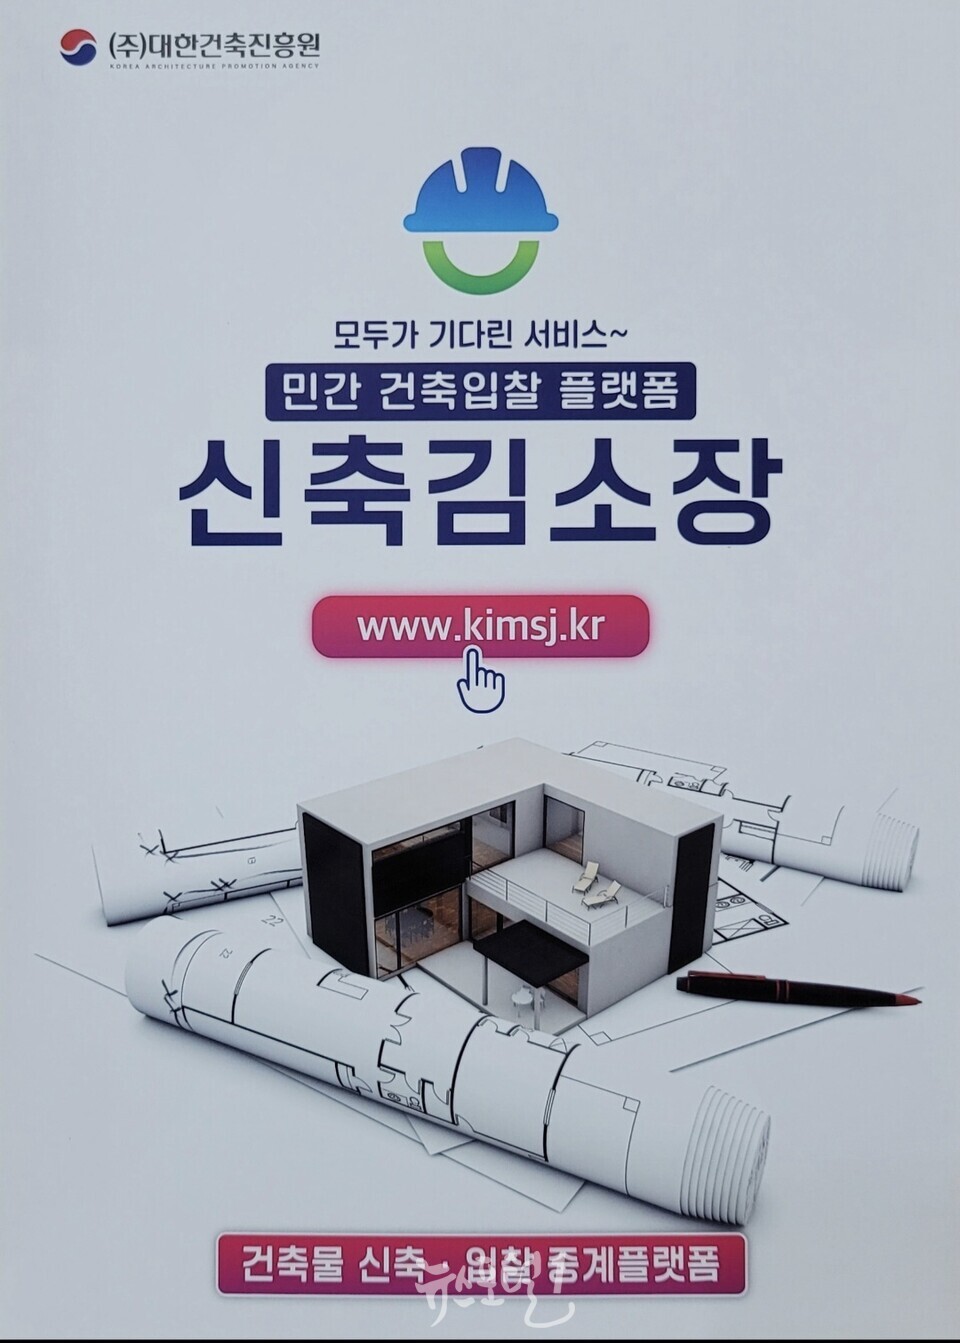 ㈜대한건축진흥원, '신축김소장’ 민간건축 입찰플랫폼